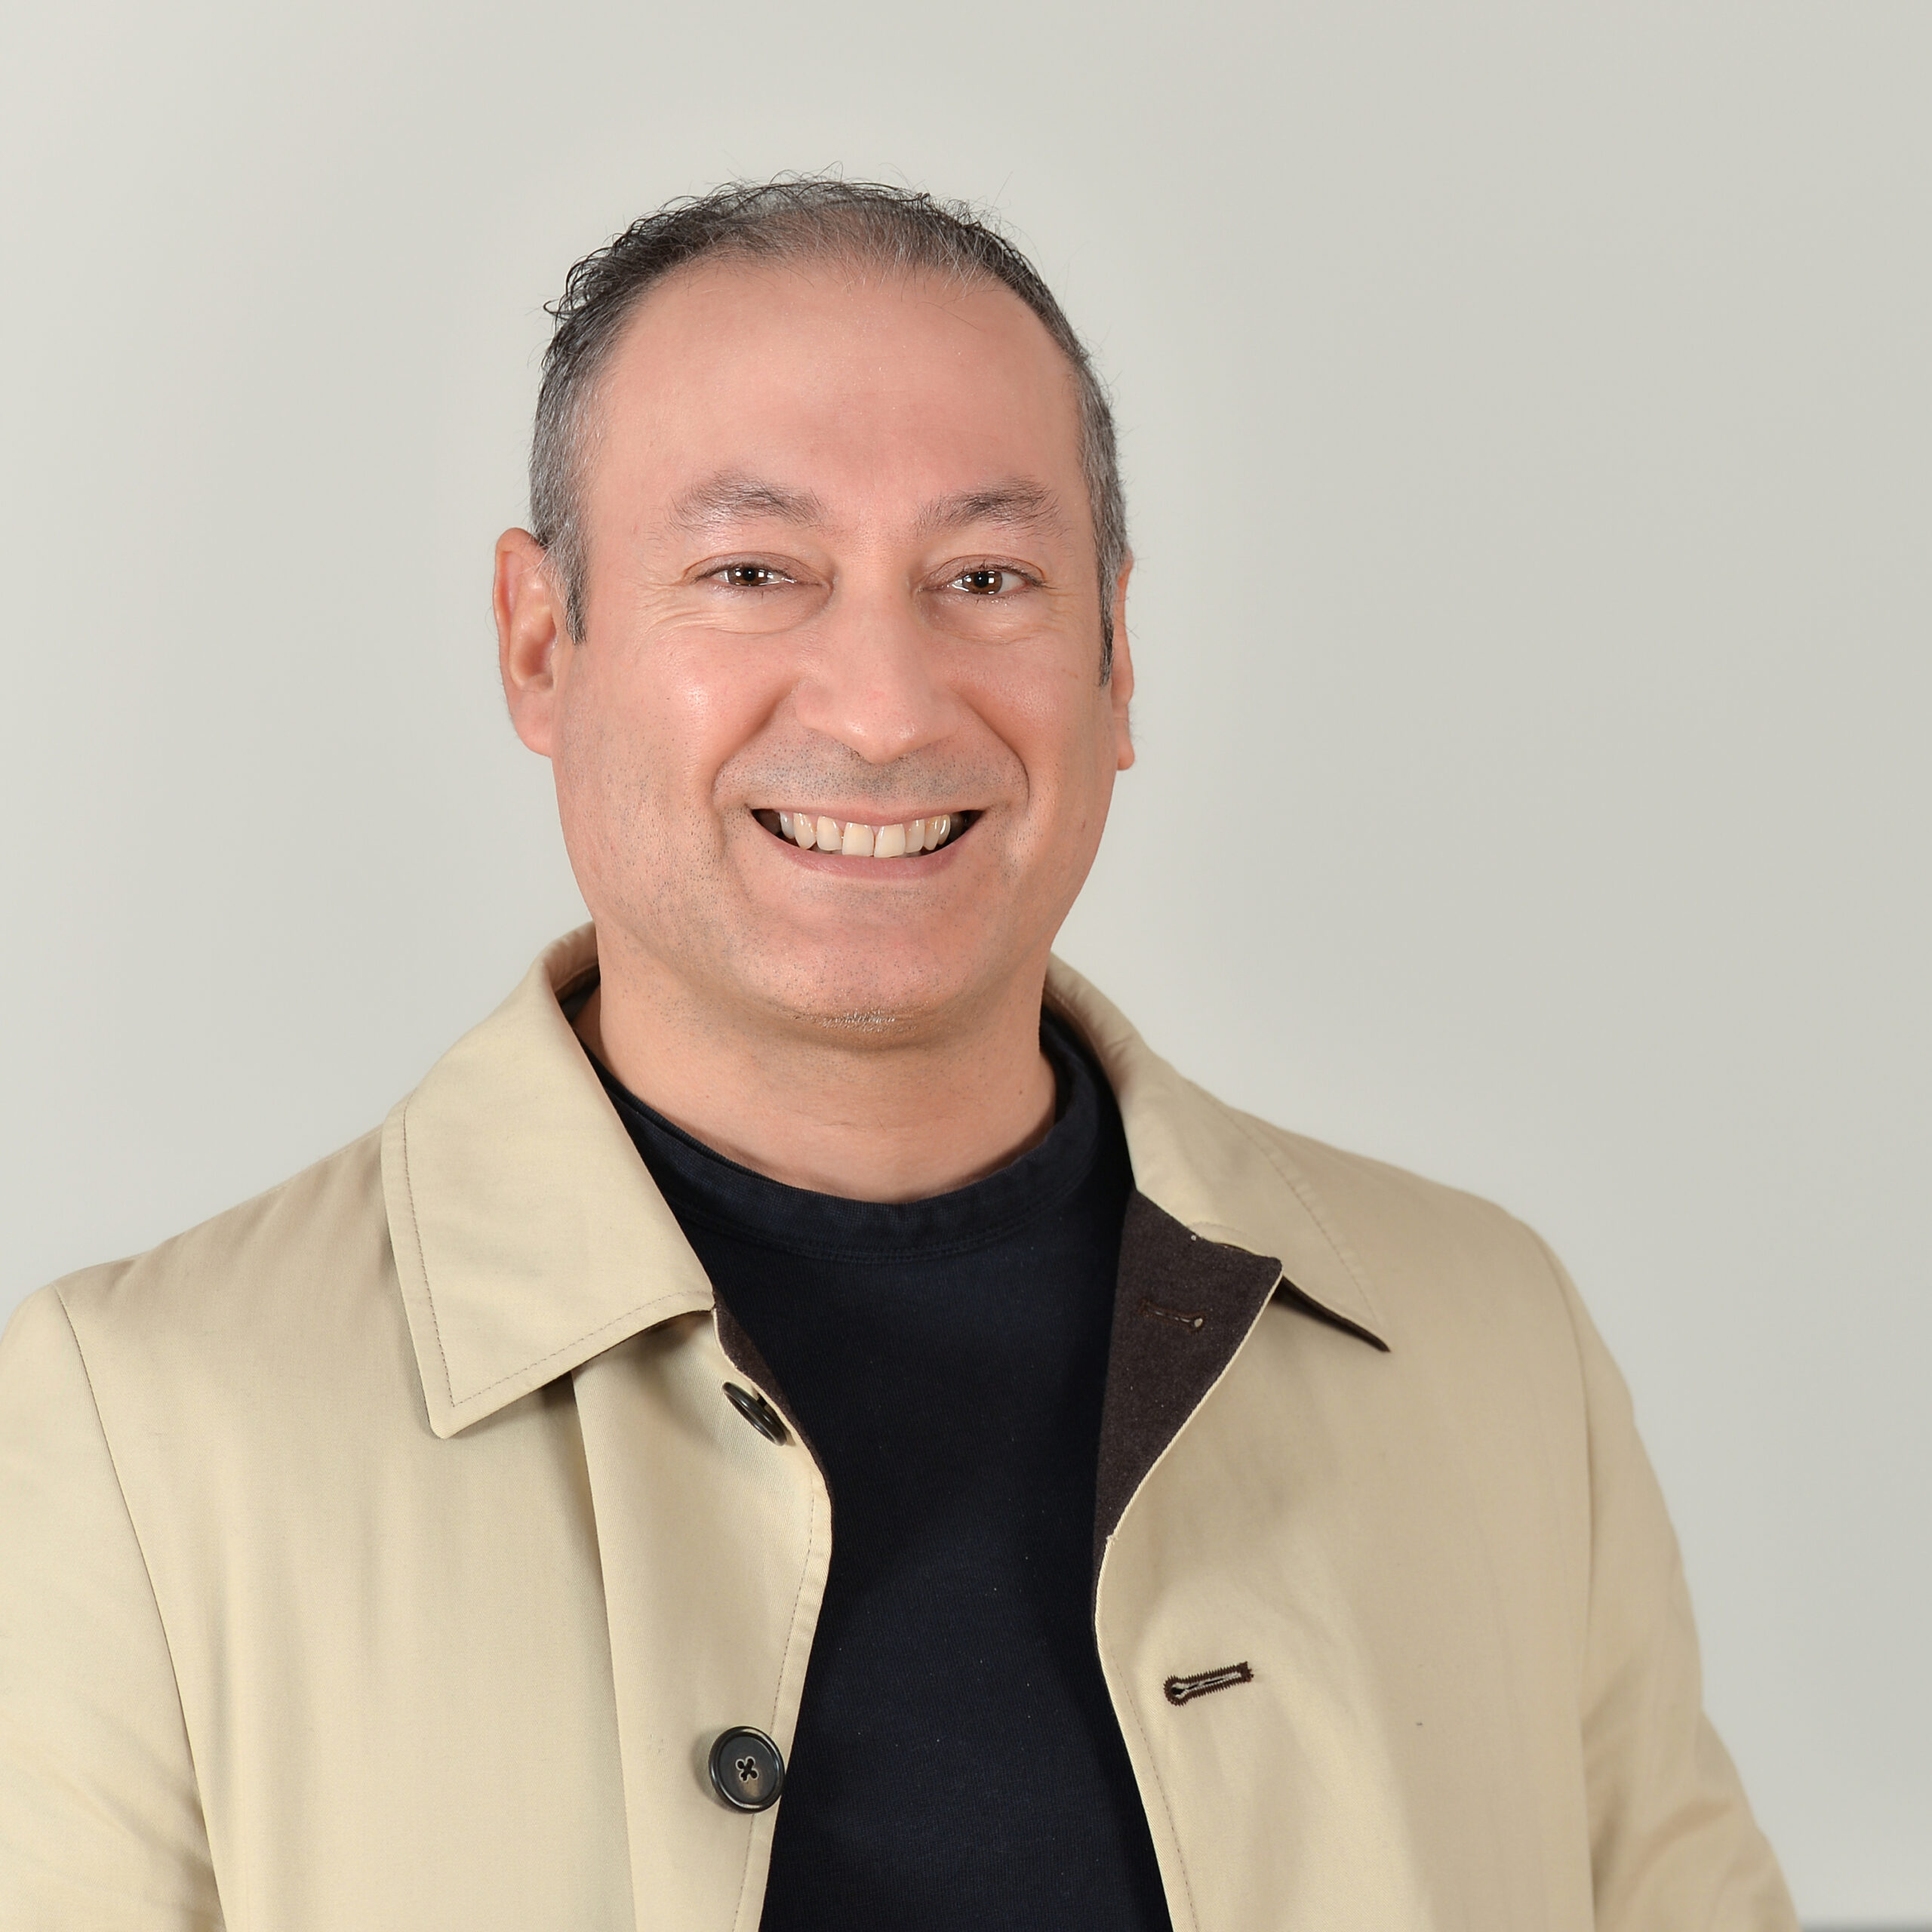 Profilbild von Sergio Masbernat in einem dunklen Shirt und beige-farbenen Blazer.